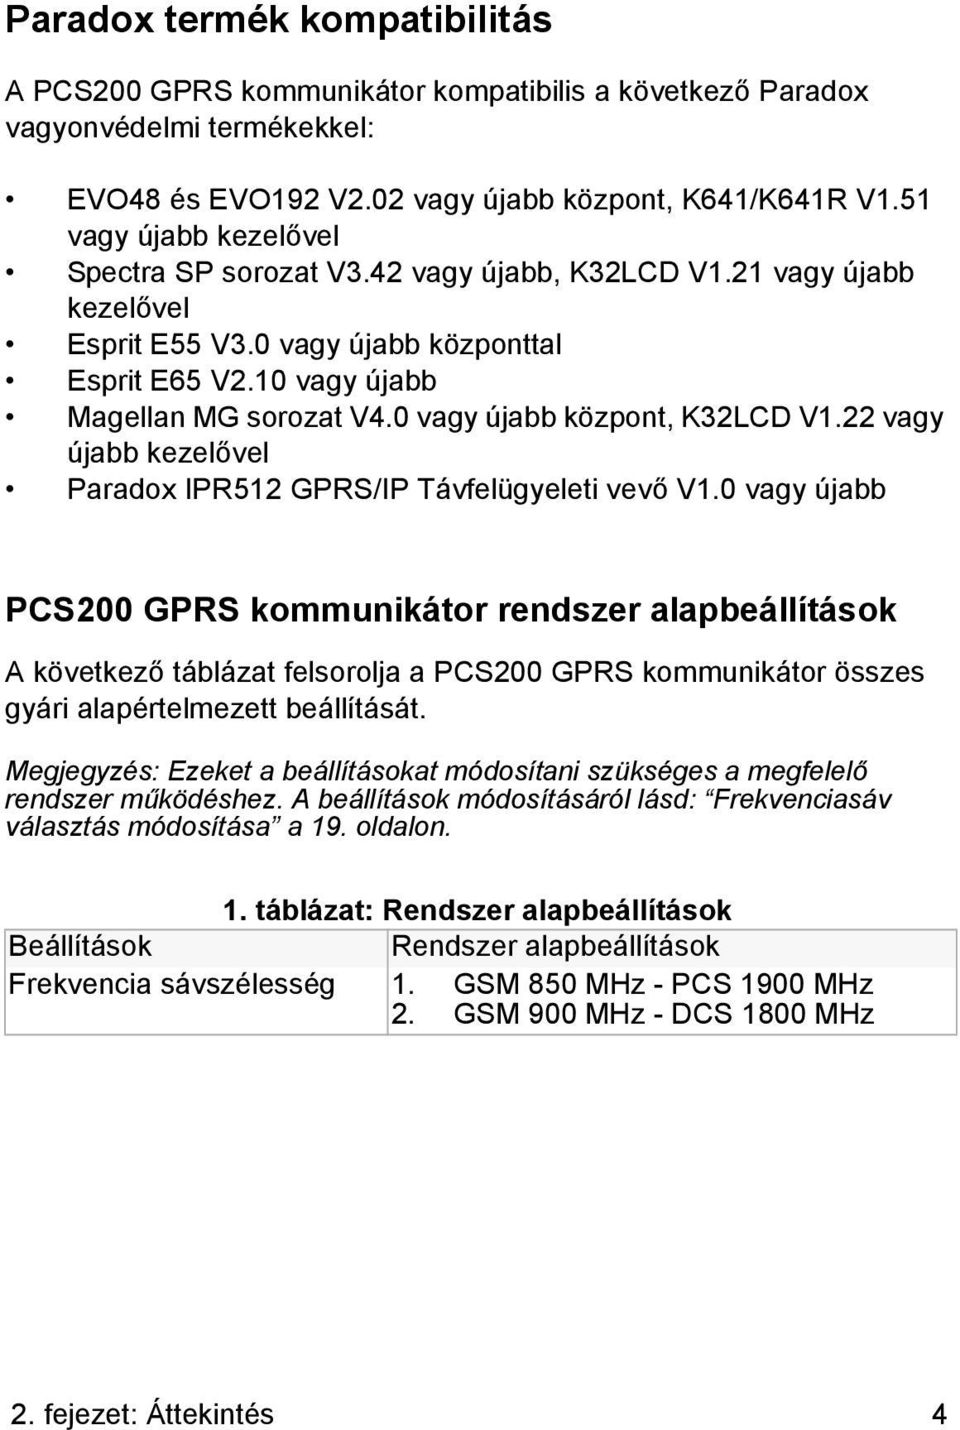 0 vagy újabb központ, K32LCD V1.22 vagy újabb kezelővel Paradox IPR512 GPRS/IP Távfelügyeleti vevő V1.